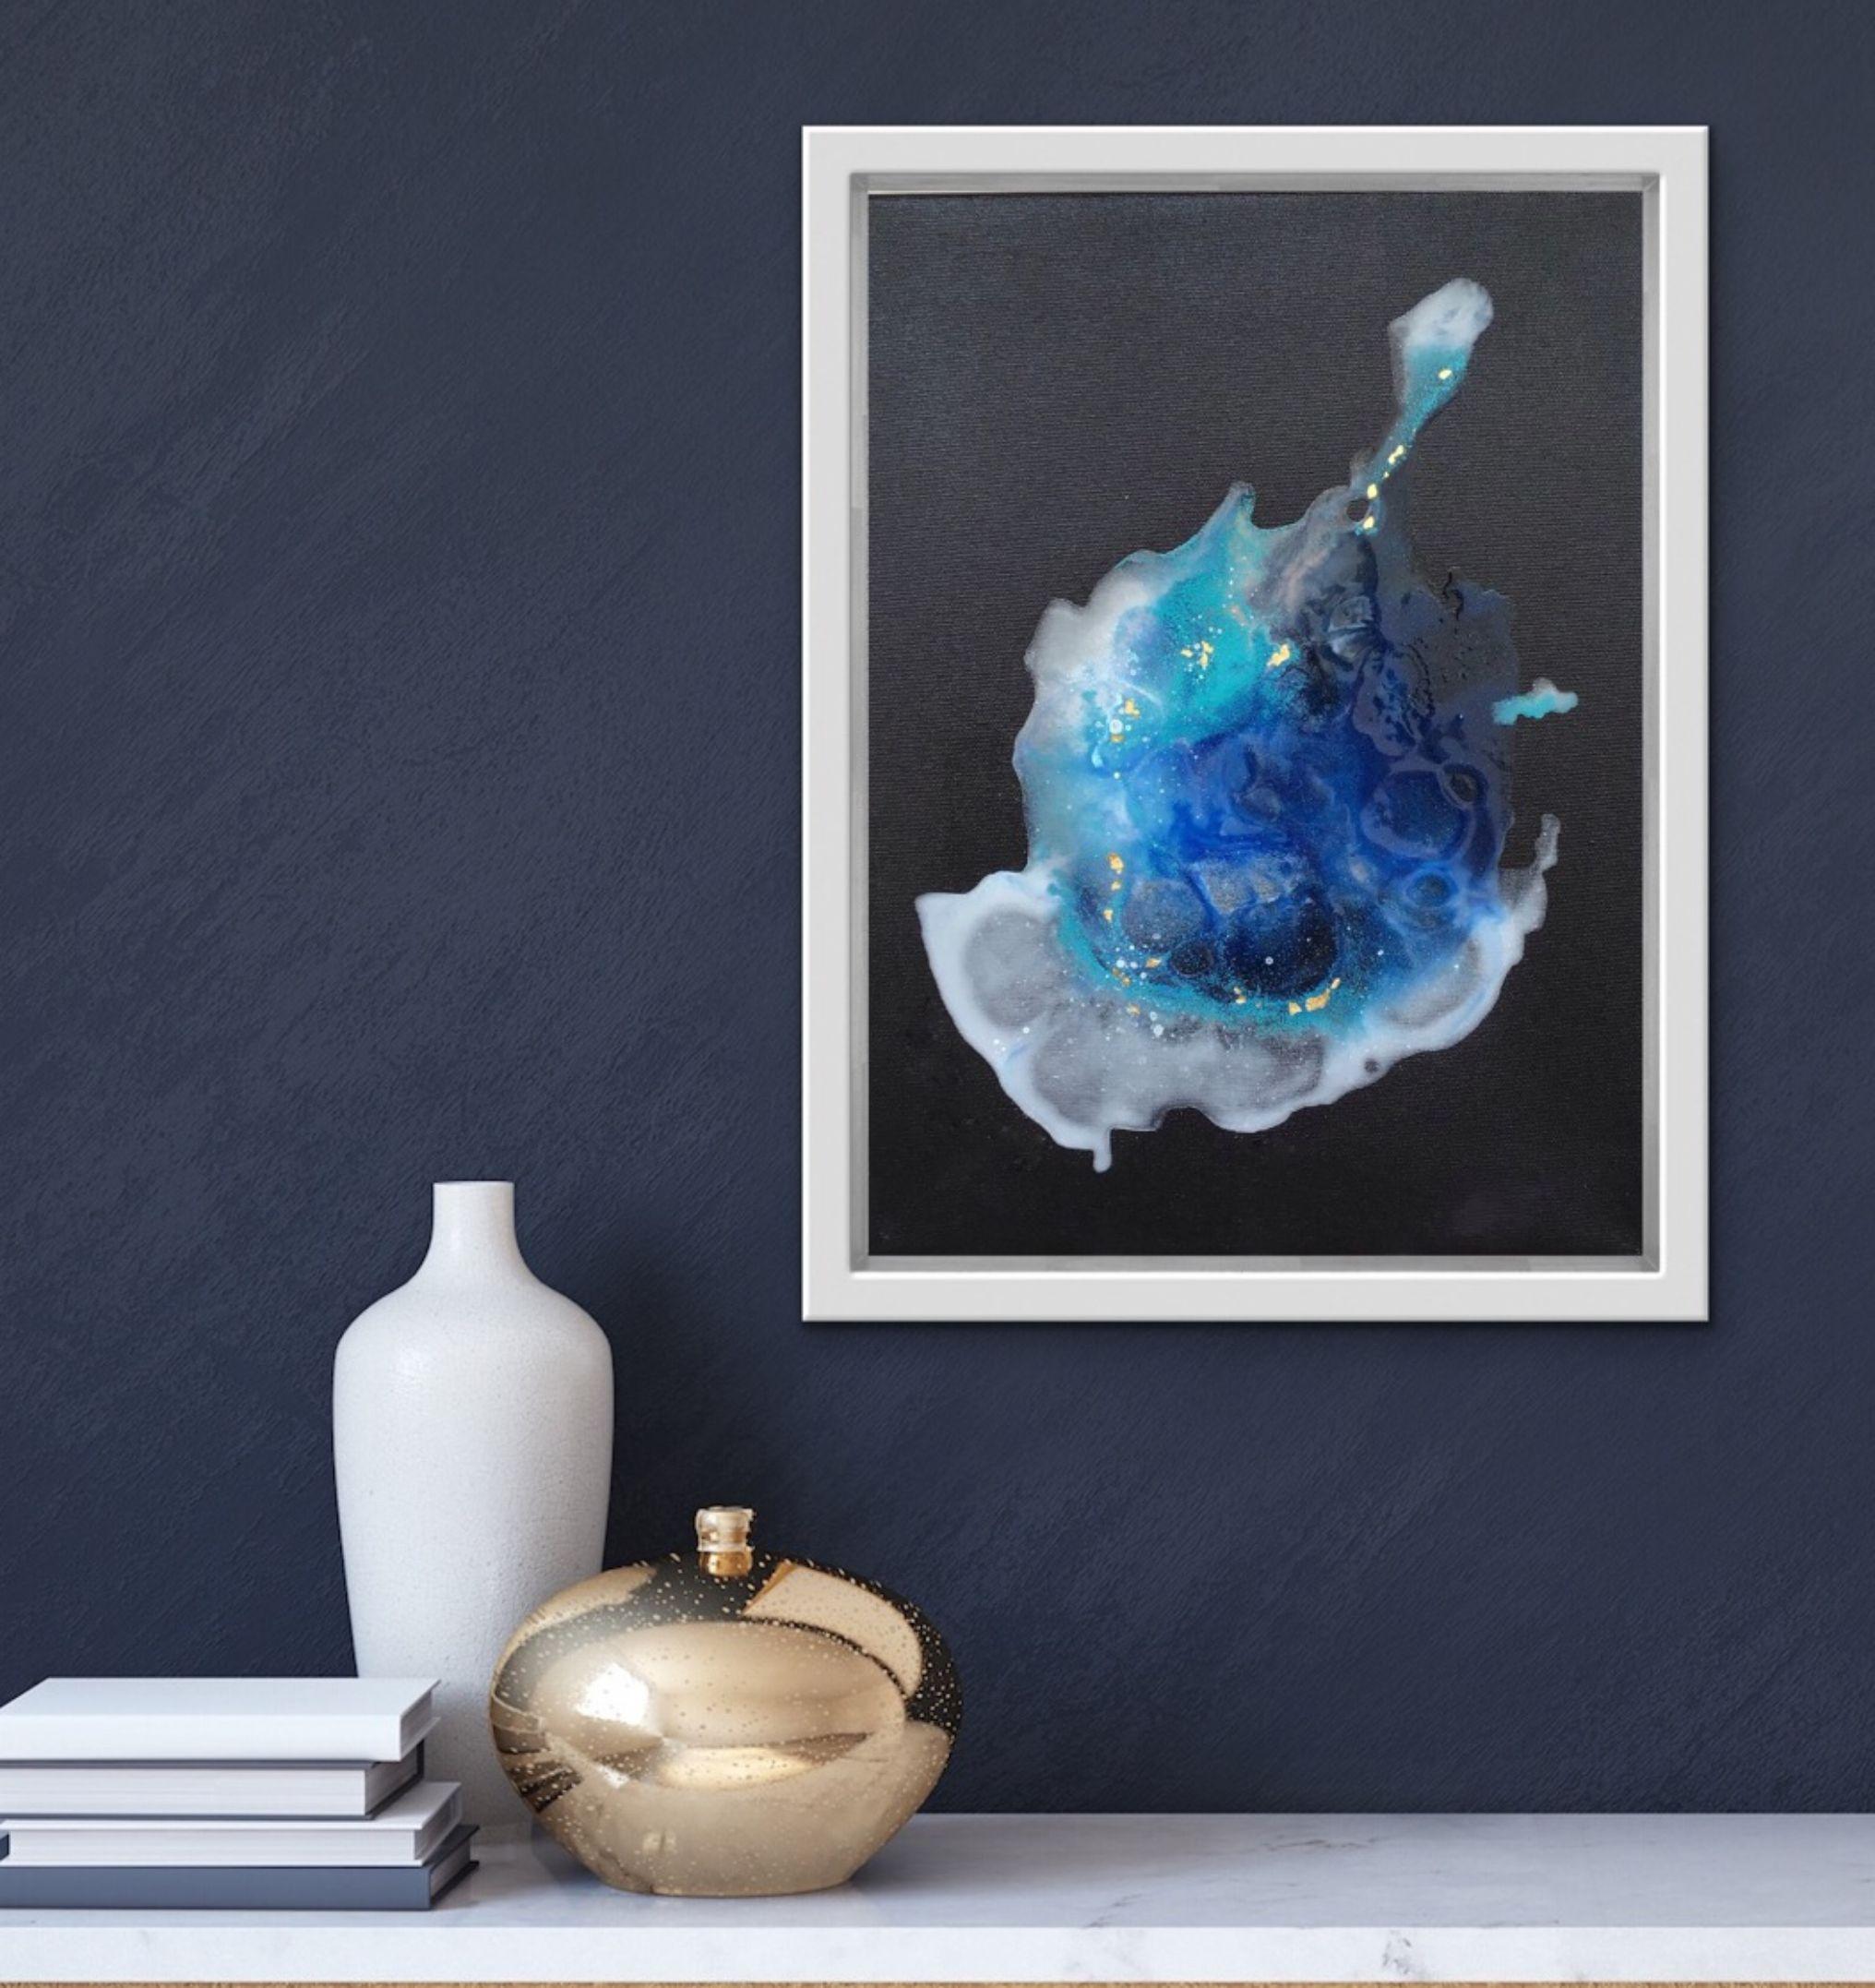 Die Lagoon Nebula-Serie ist eine Kombination aus meinen laufenden Sammlungen Hydroexperiences und Skyexperiences. Sie ist inspiriert von den Texturen und Farbempfindungen des Universums und der Lebewesen darin. Die Natur ist immer meine größte